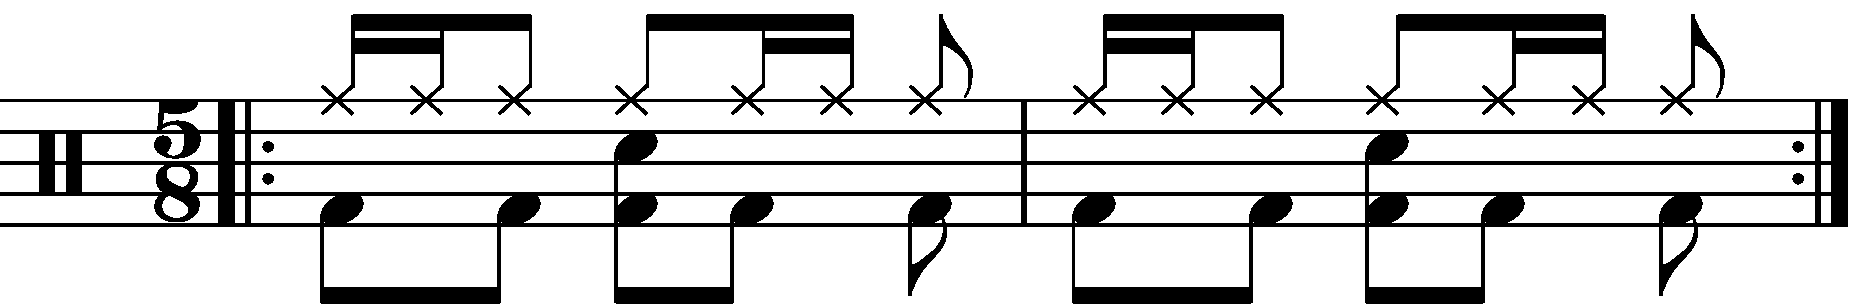 A simple 2 bar 5/8 groove